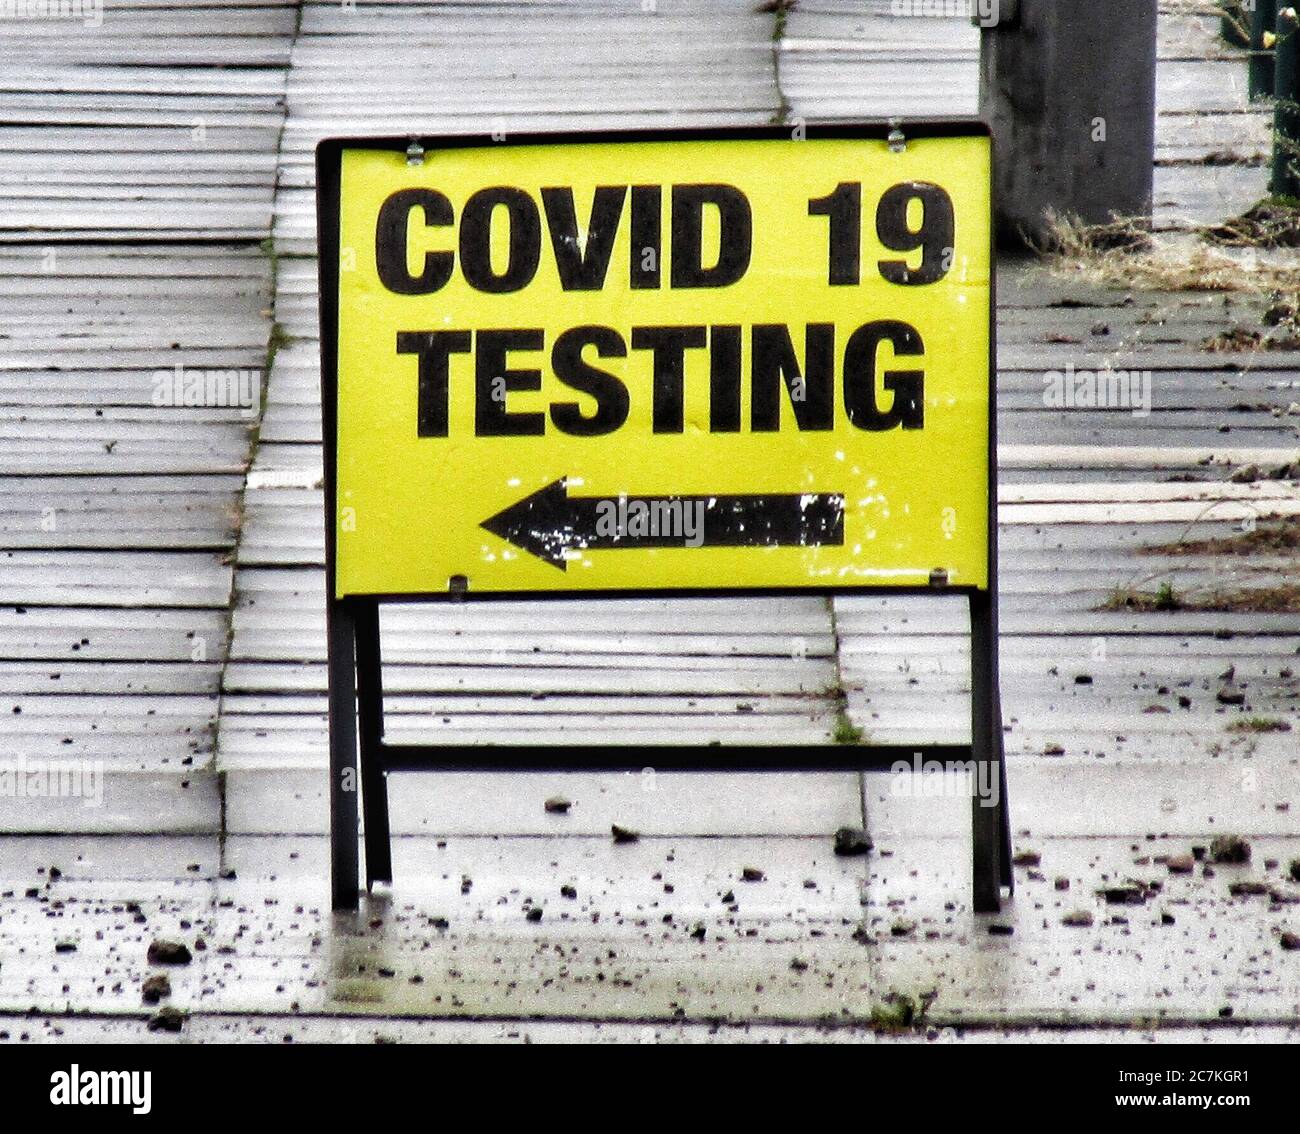 Coronavirus testing in Liverpool Stock Photo